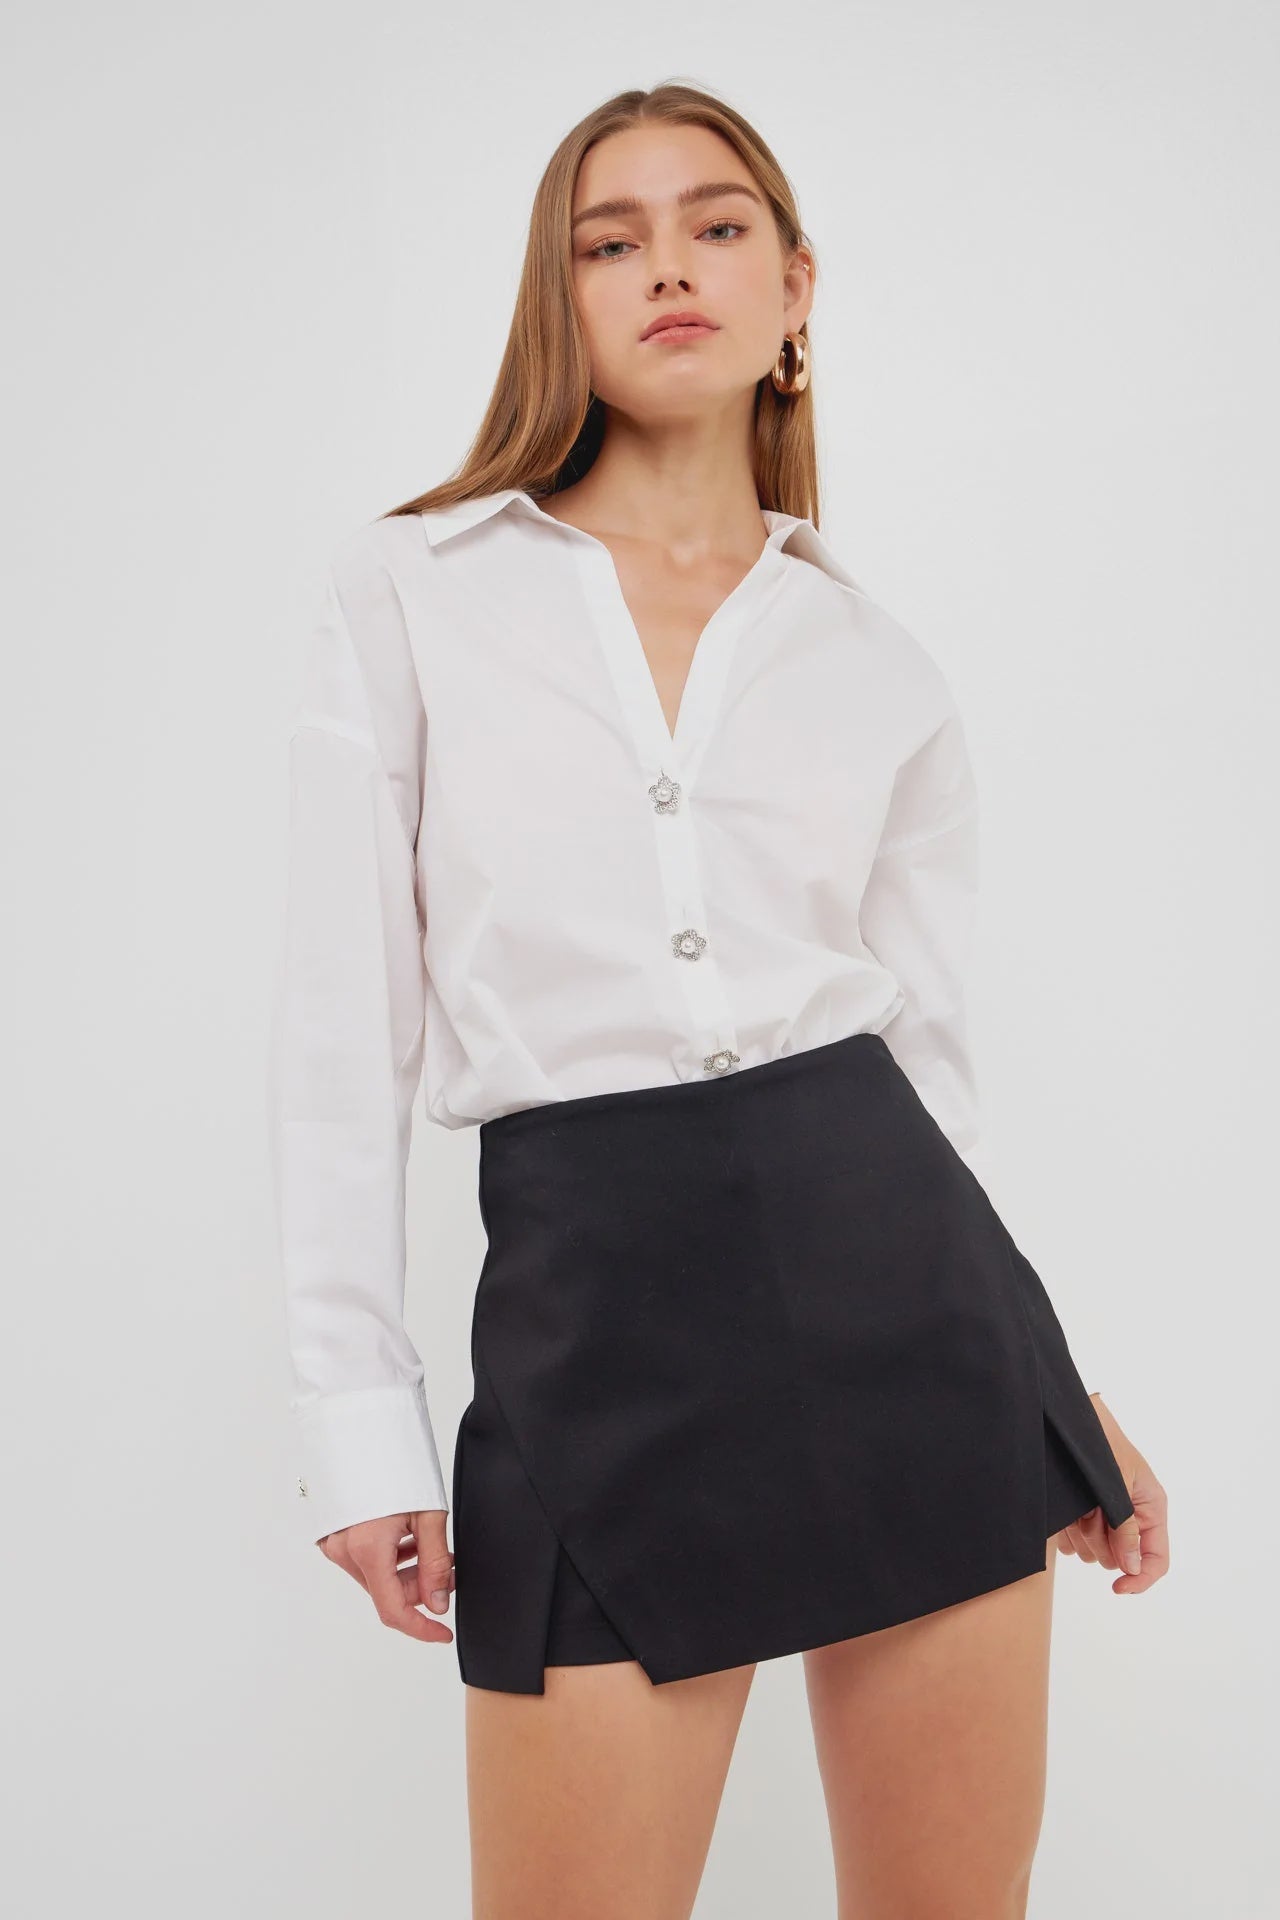 Oversized Fancy Button Collard Shirt - Lush Lemon - Women's Clothing - English Factory - 11482